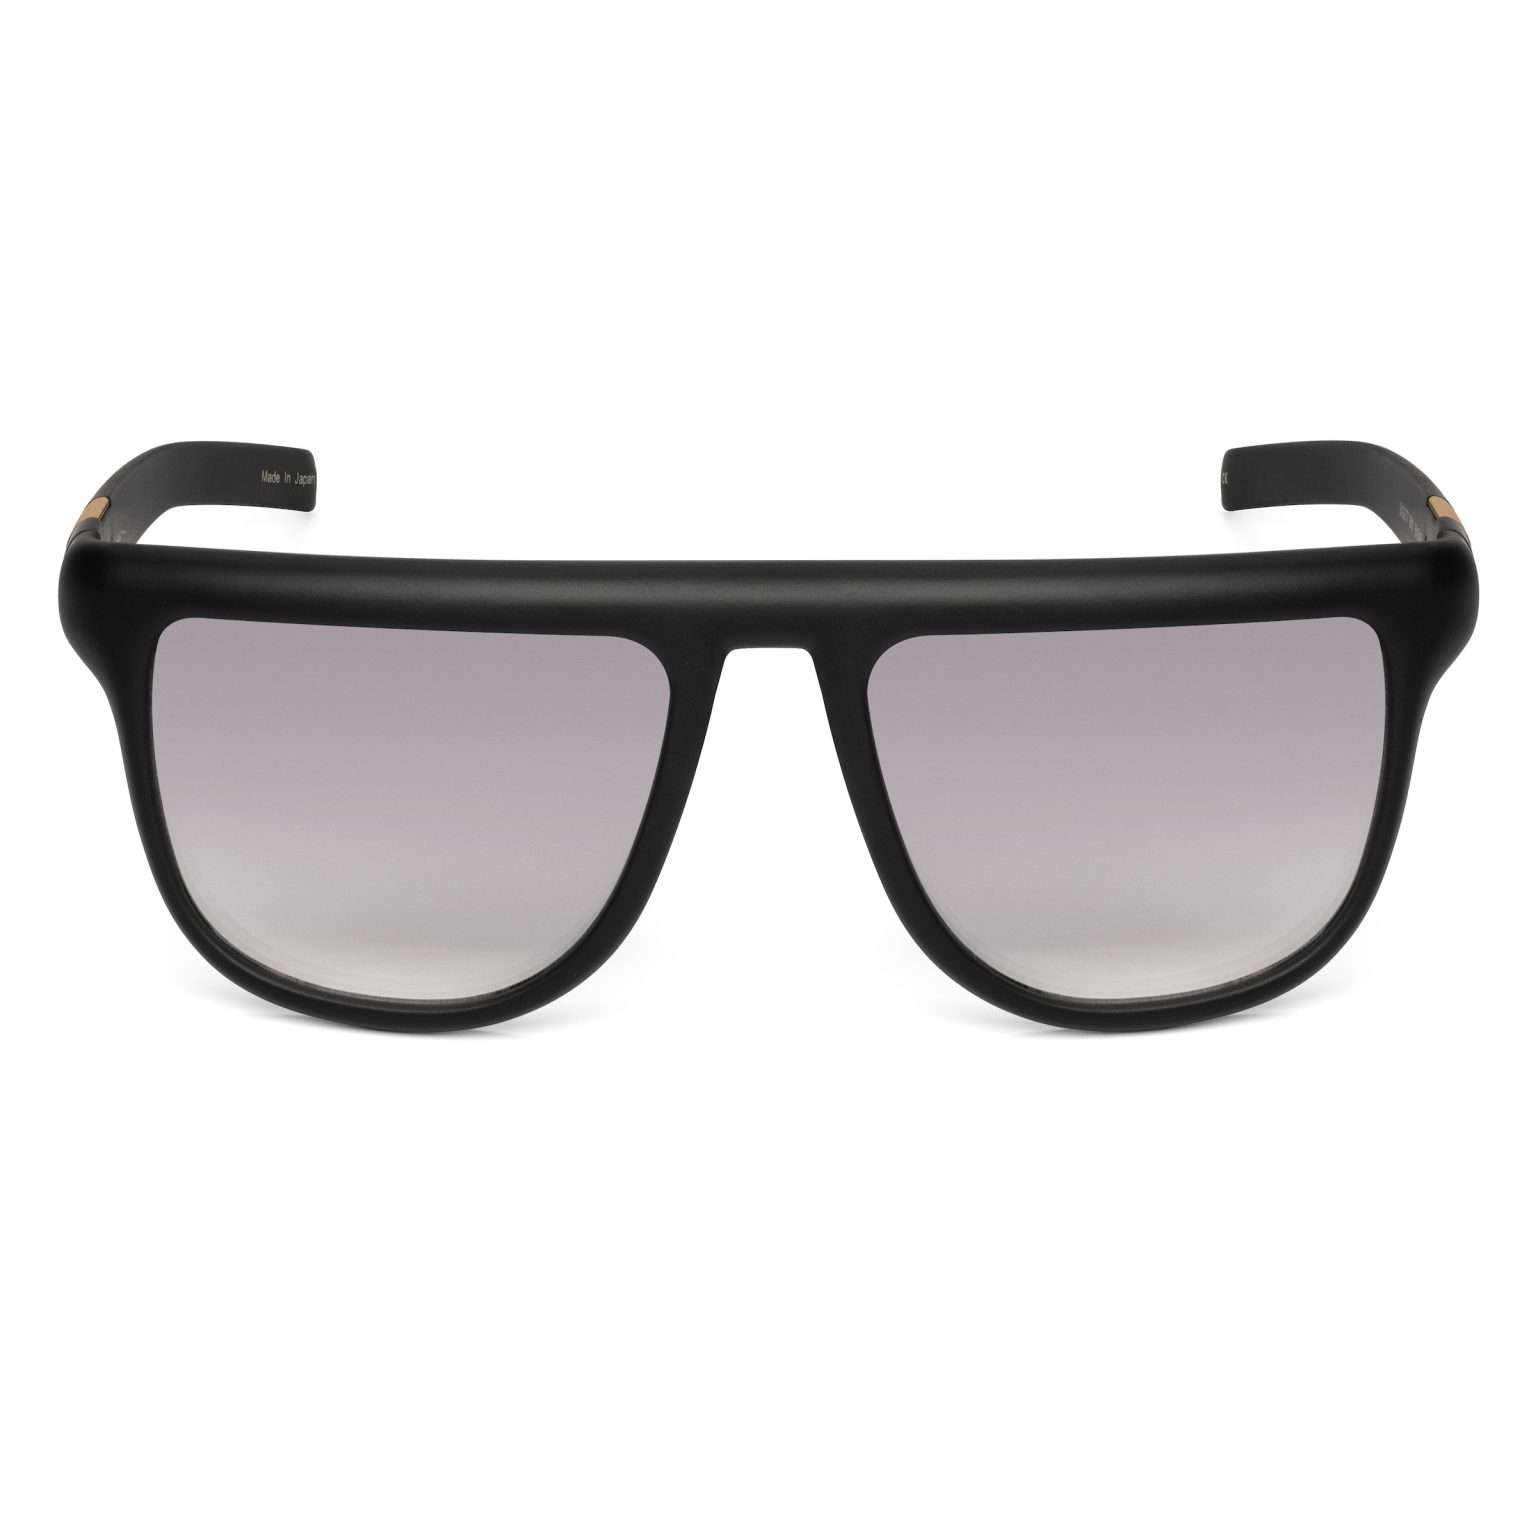 BADAZZ GLAZZ by Joe Pesci – Joe Pesci Sunglasses Bupkis Eyewear Store ...